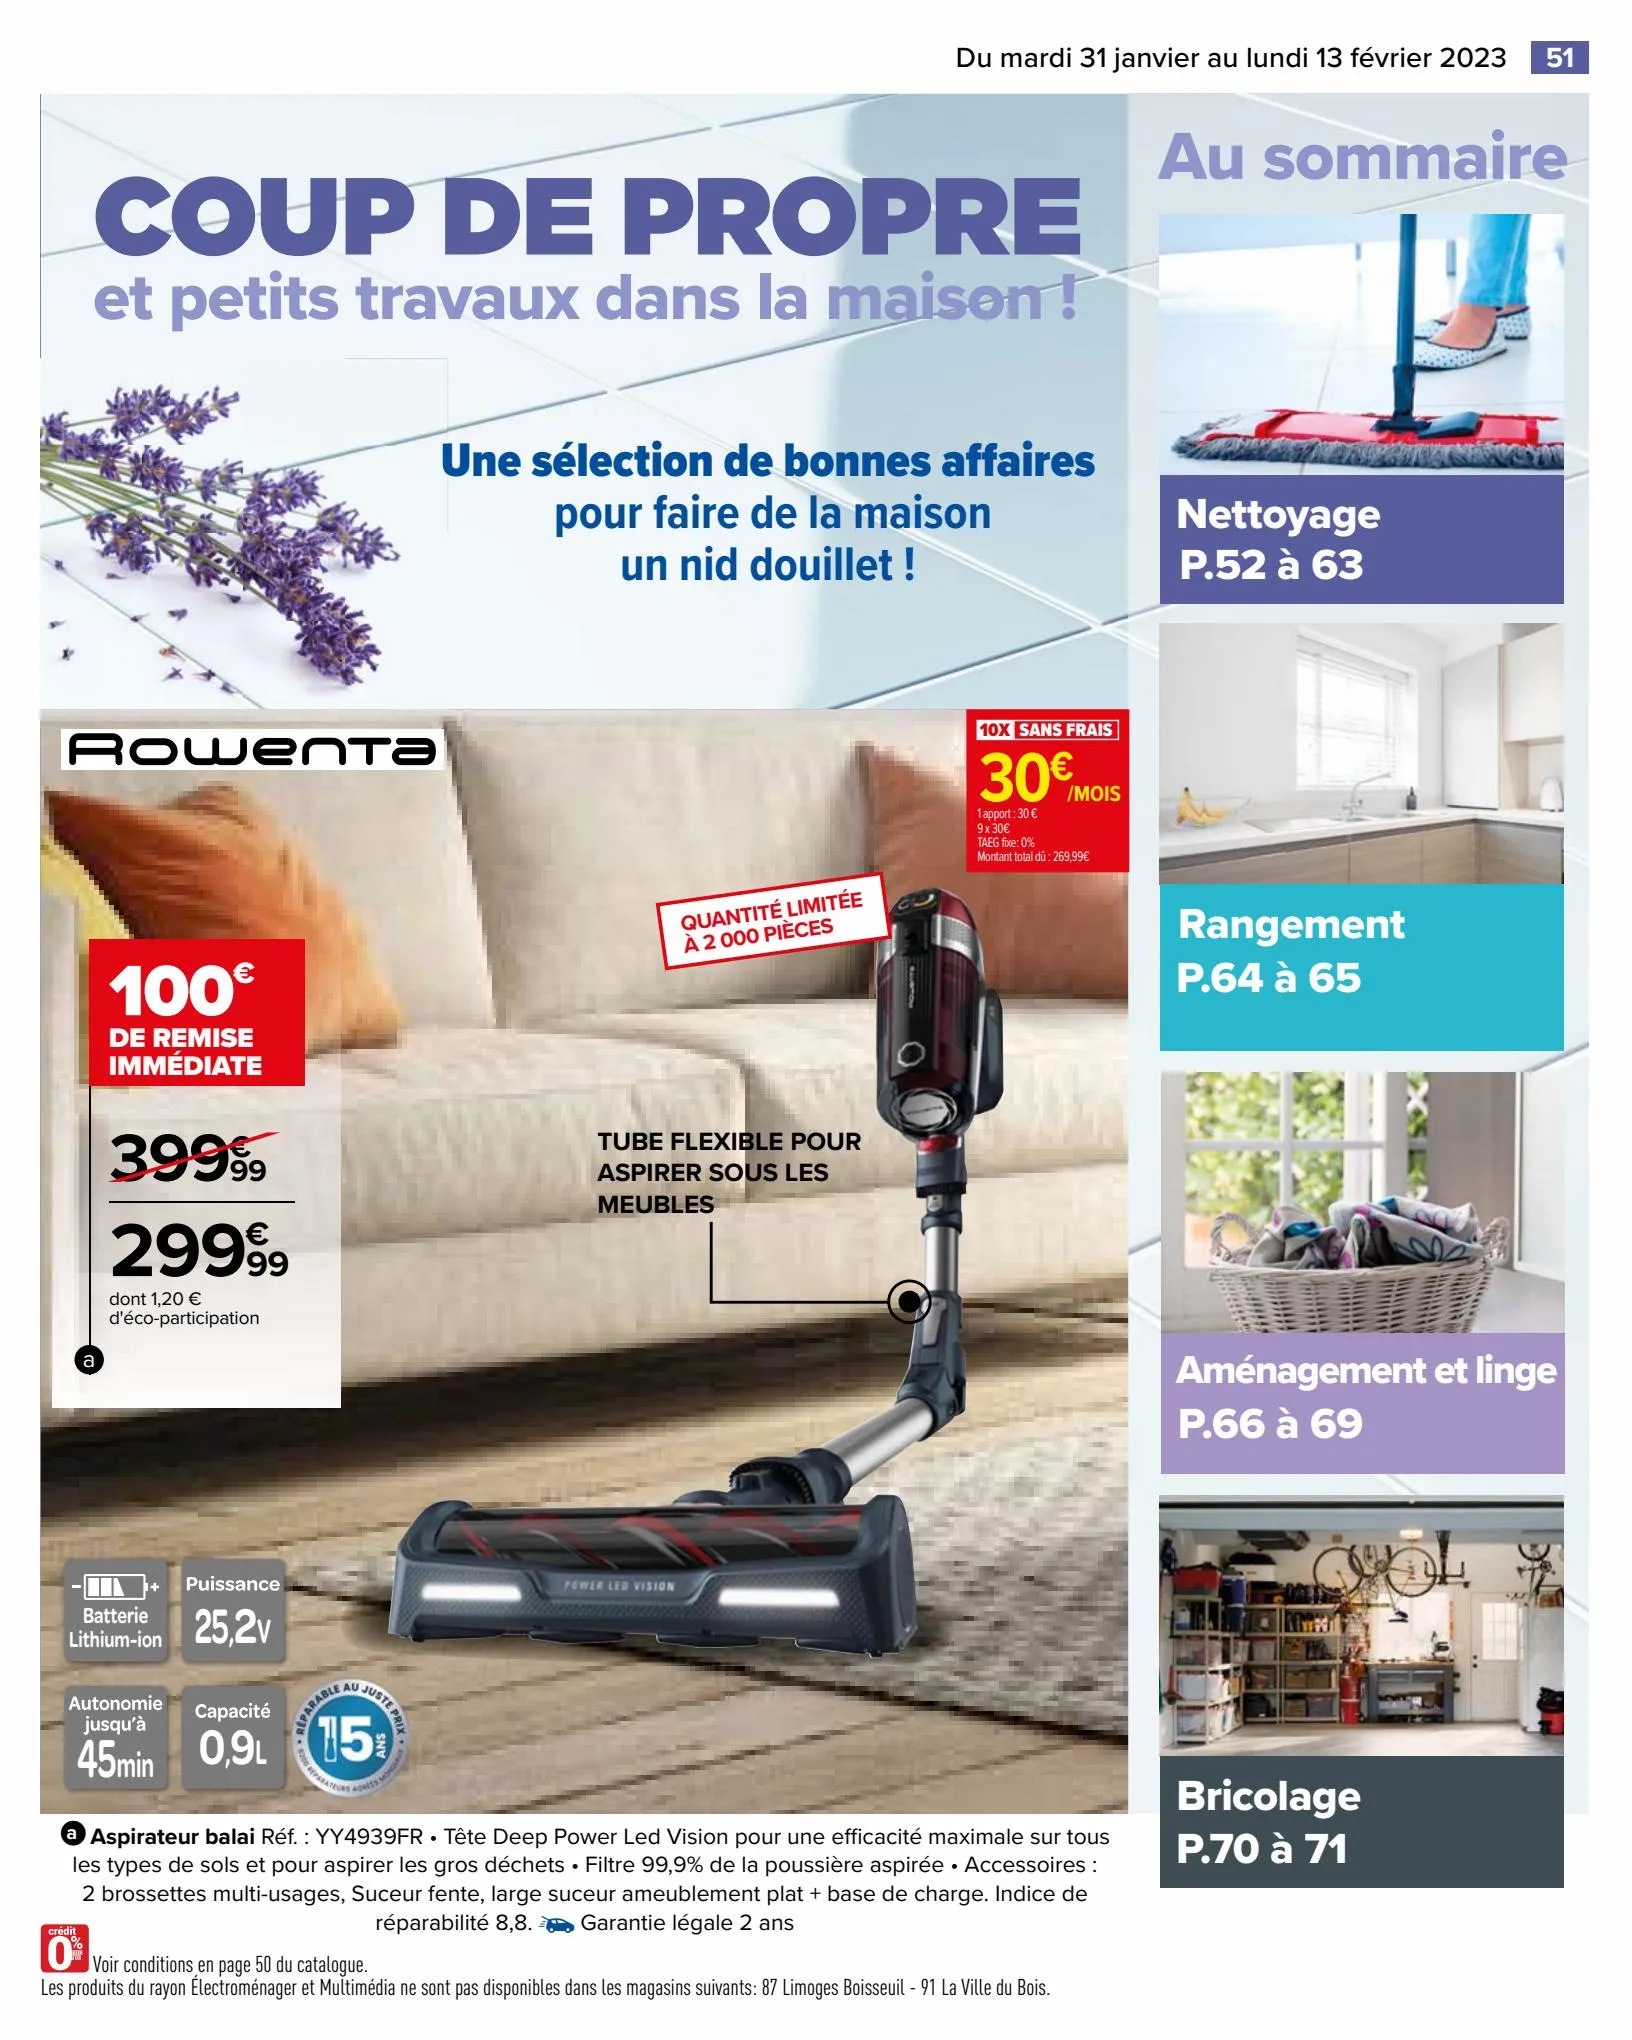 Catalogue Coup de propre dans la maison, page 00051